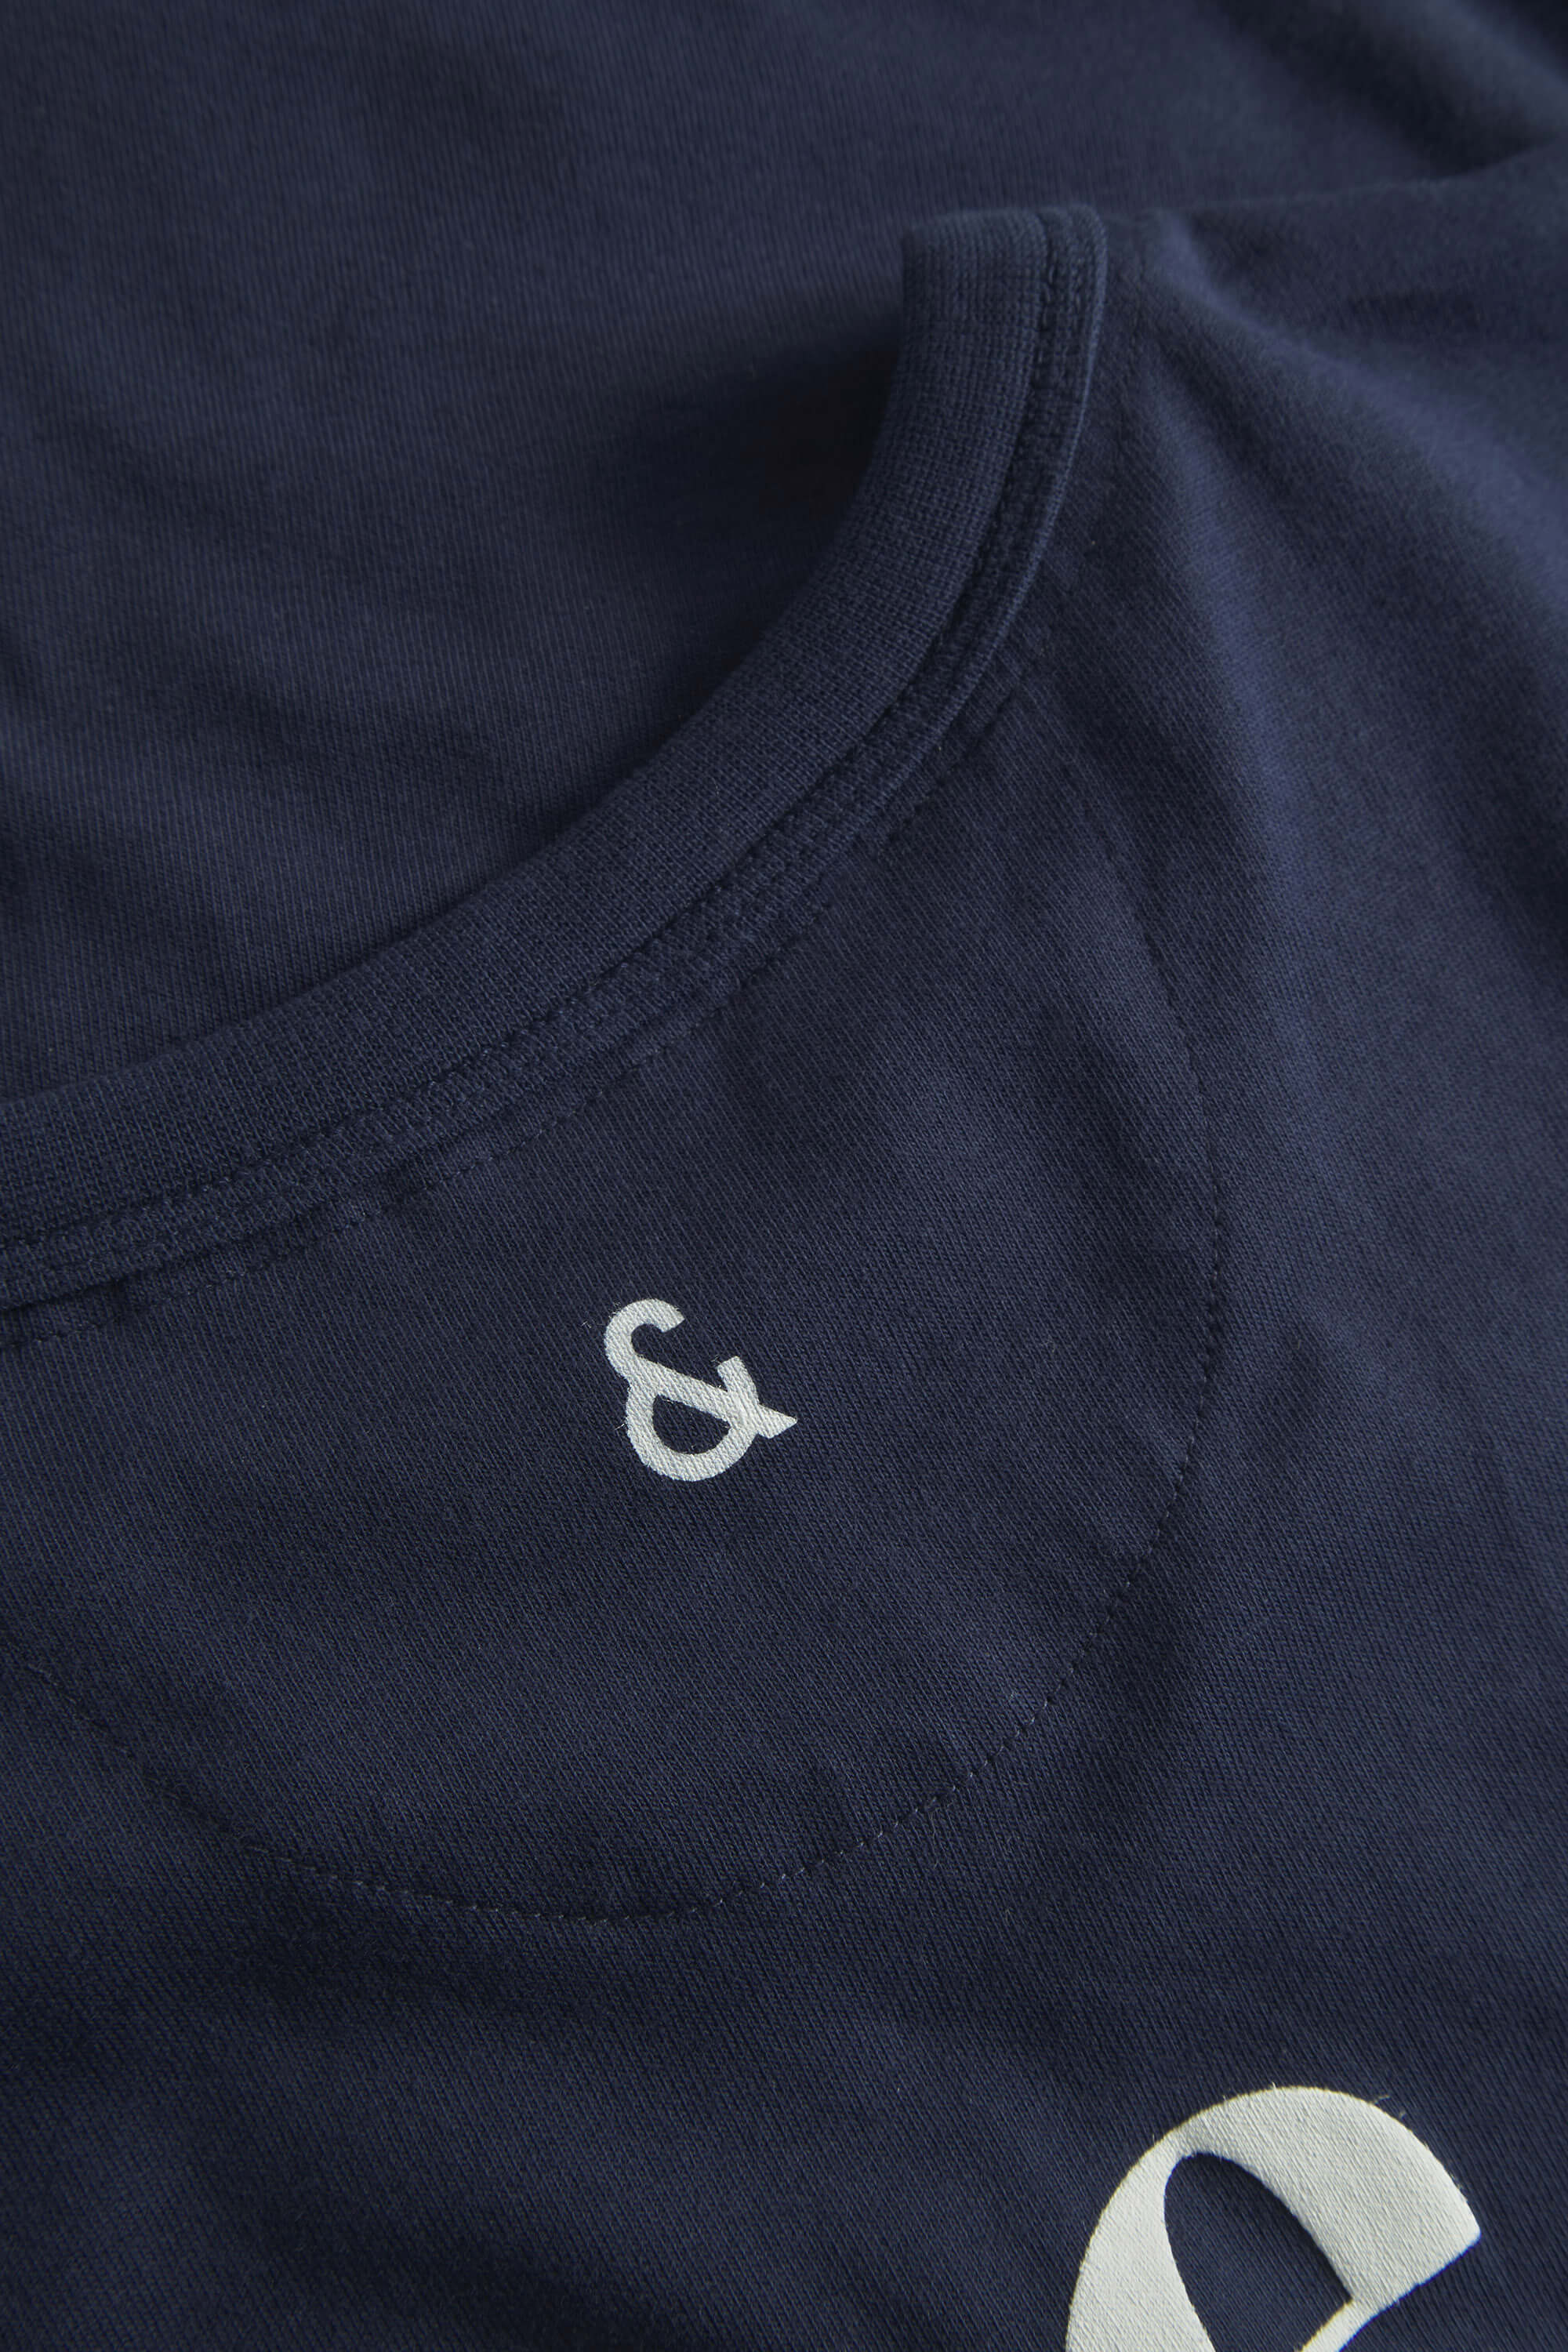 Herren T-Shirt, navy, 100% Baumwolle  von Colours & Sons